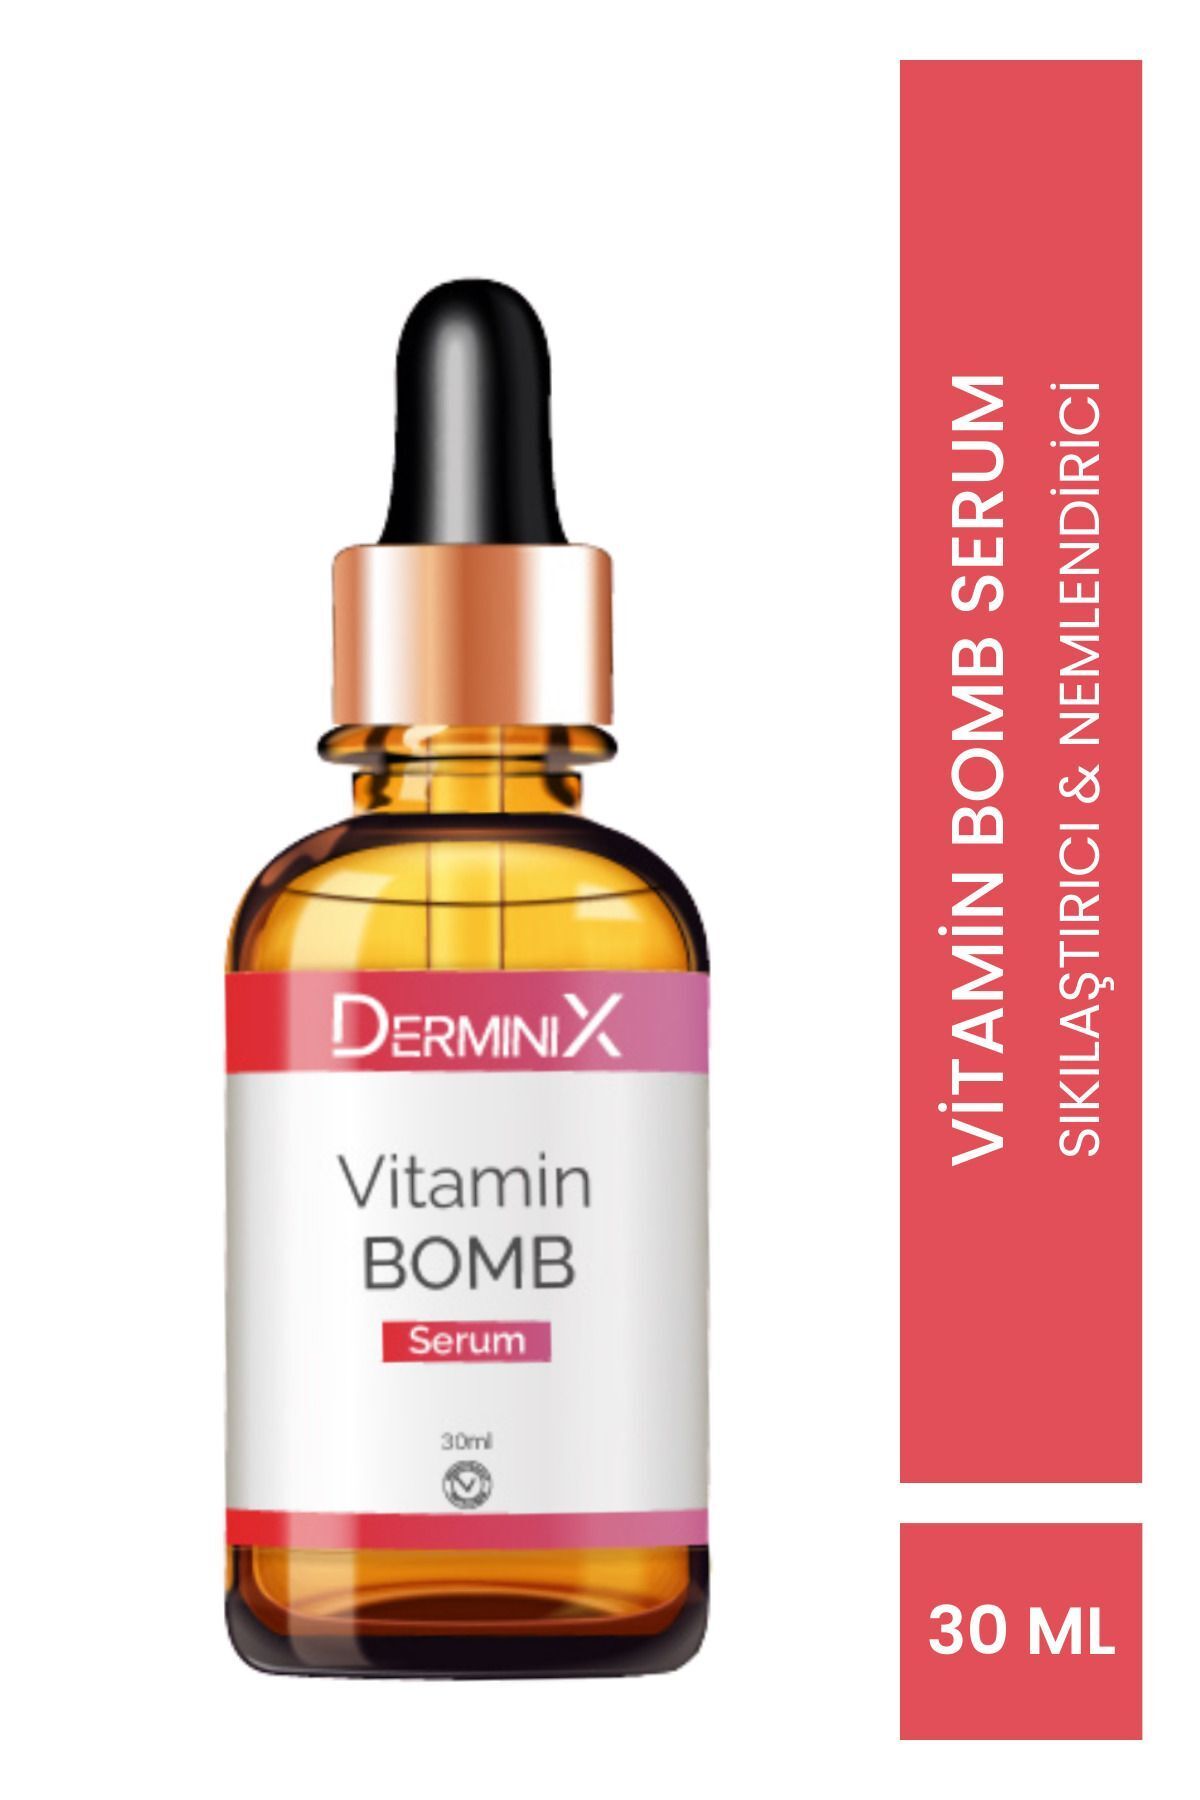 Derminix Vitamin Bomb Serum